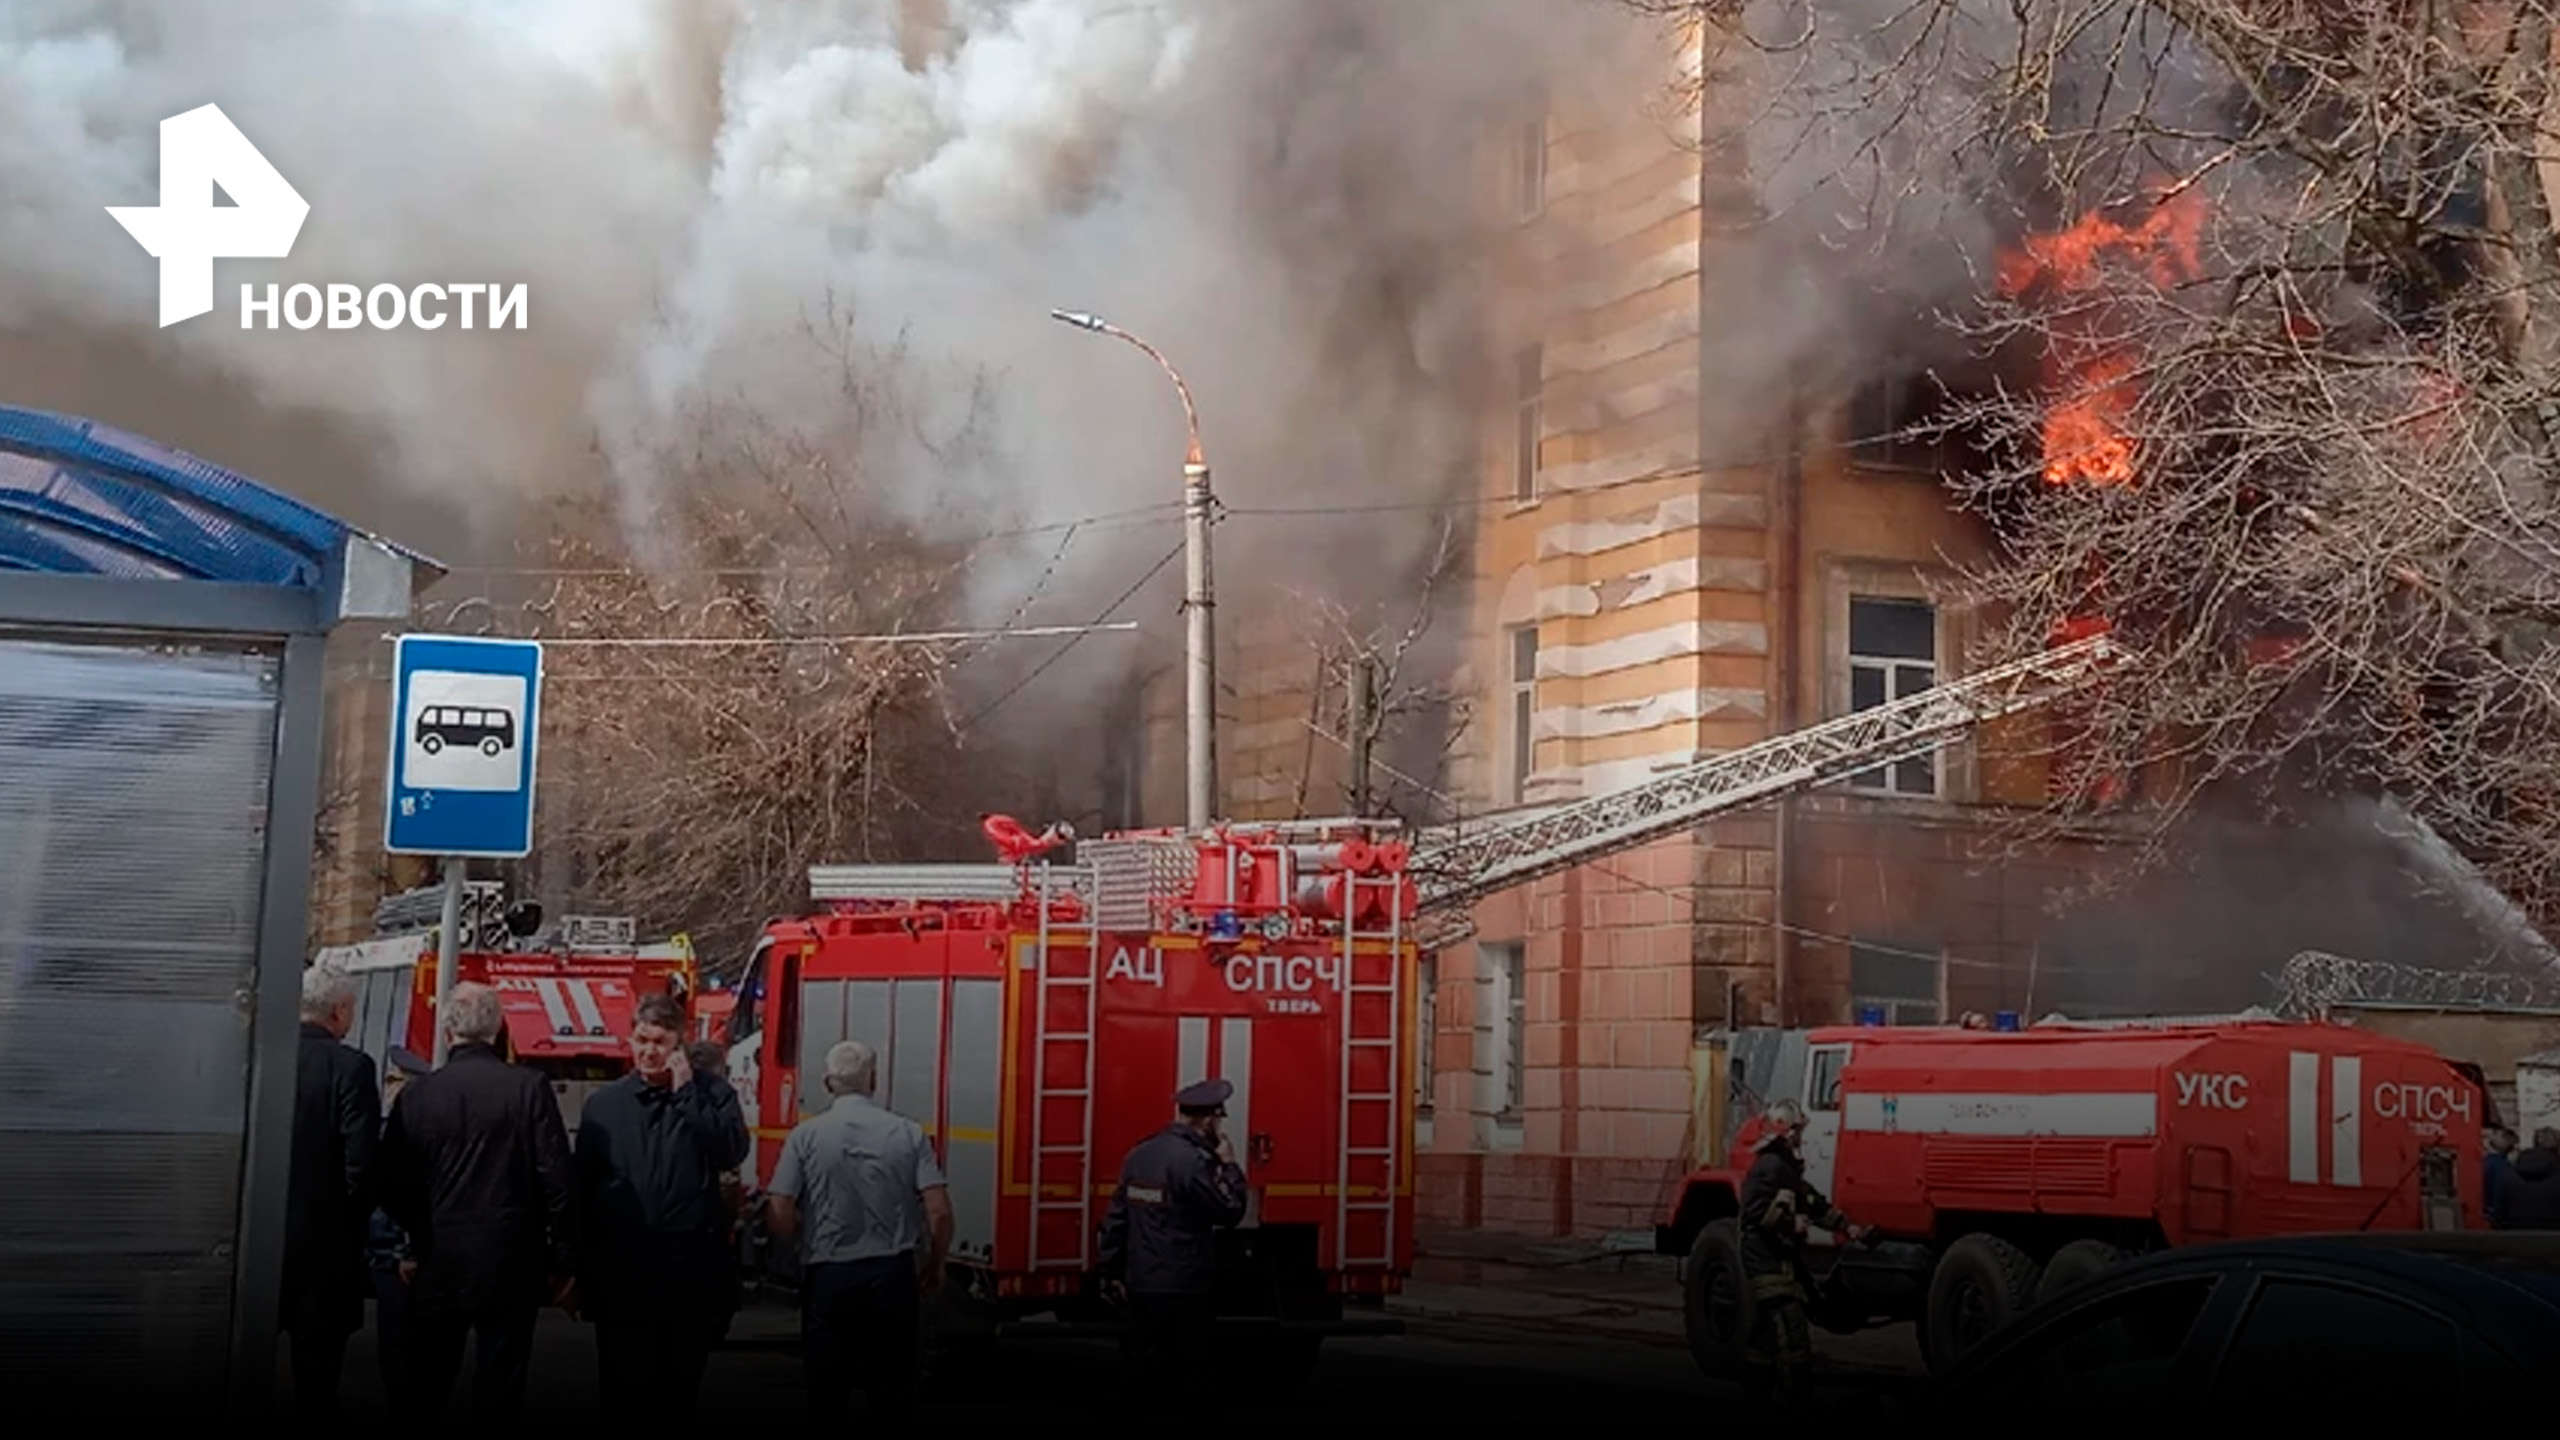 ВИДЕО: горит здание научного центра войск ВКС / РЕН Новости